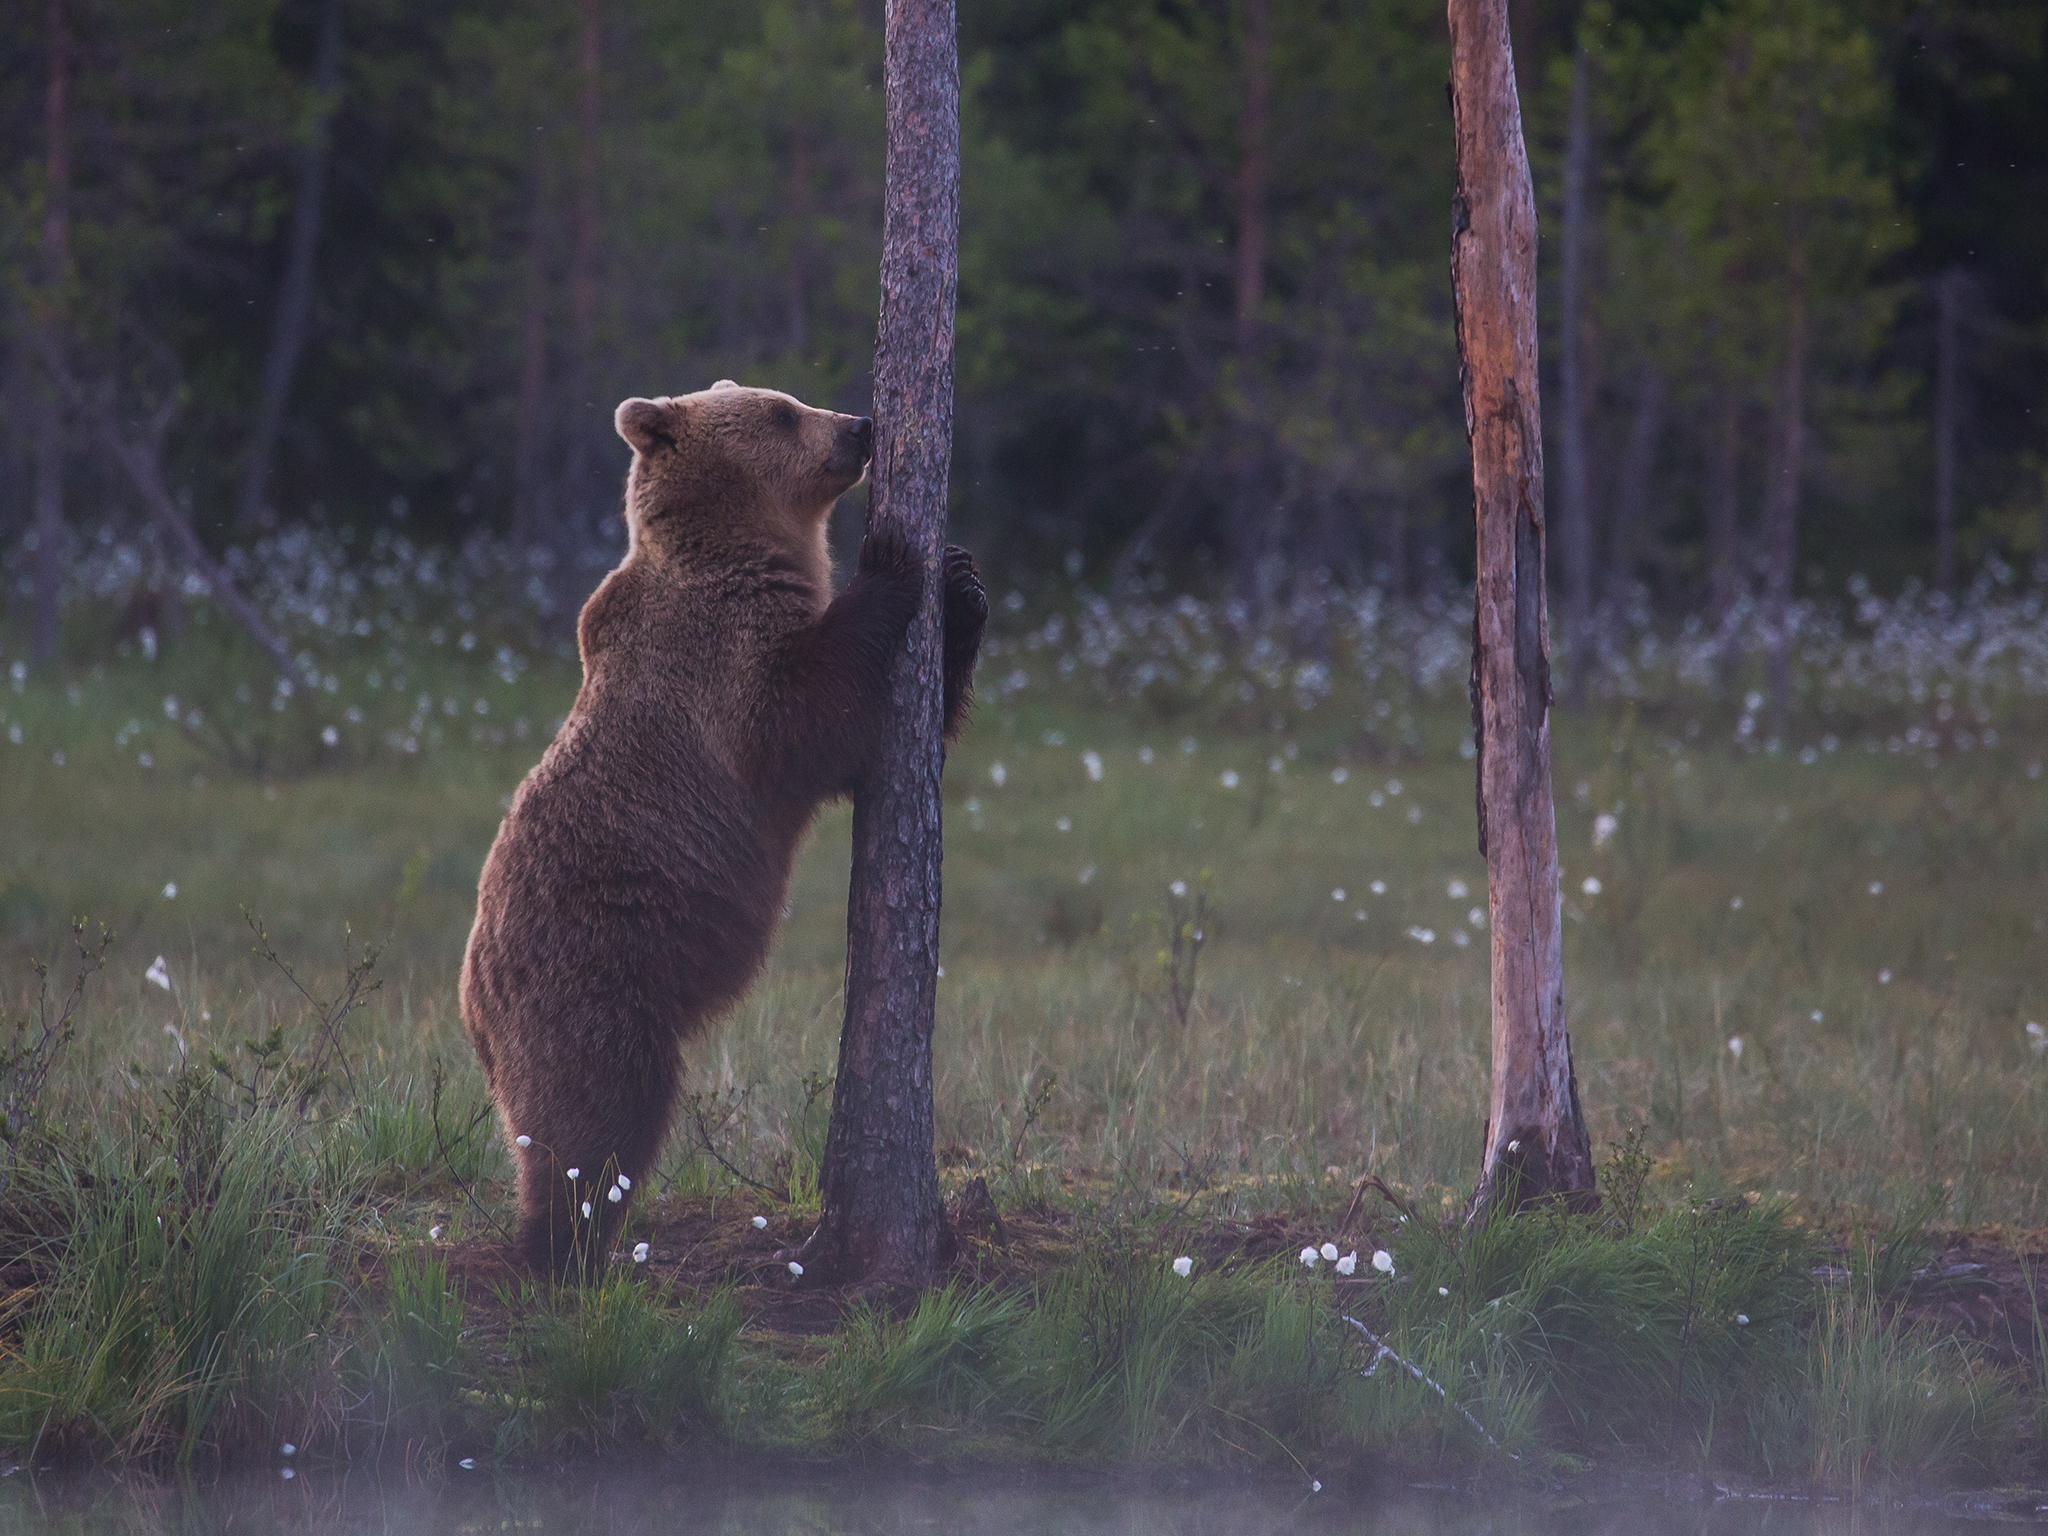   Skjulet ved tjernet     Jakt utryddet nesten bjørnen i Norge     I 1850-60 ble det skutt 200-300 bjørn per år i Norge. Intens jakt både i Norge og Sverige førte til at bjørnebestanden tidlig i forrige århundre nesten var utryddet i størsteparten av